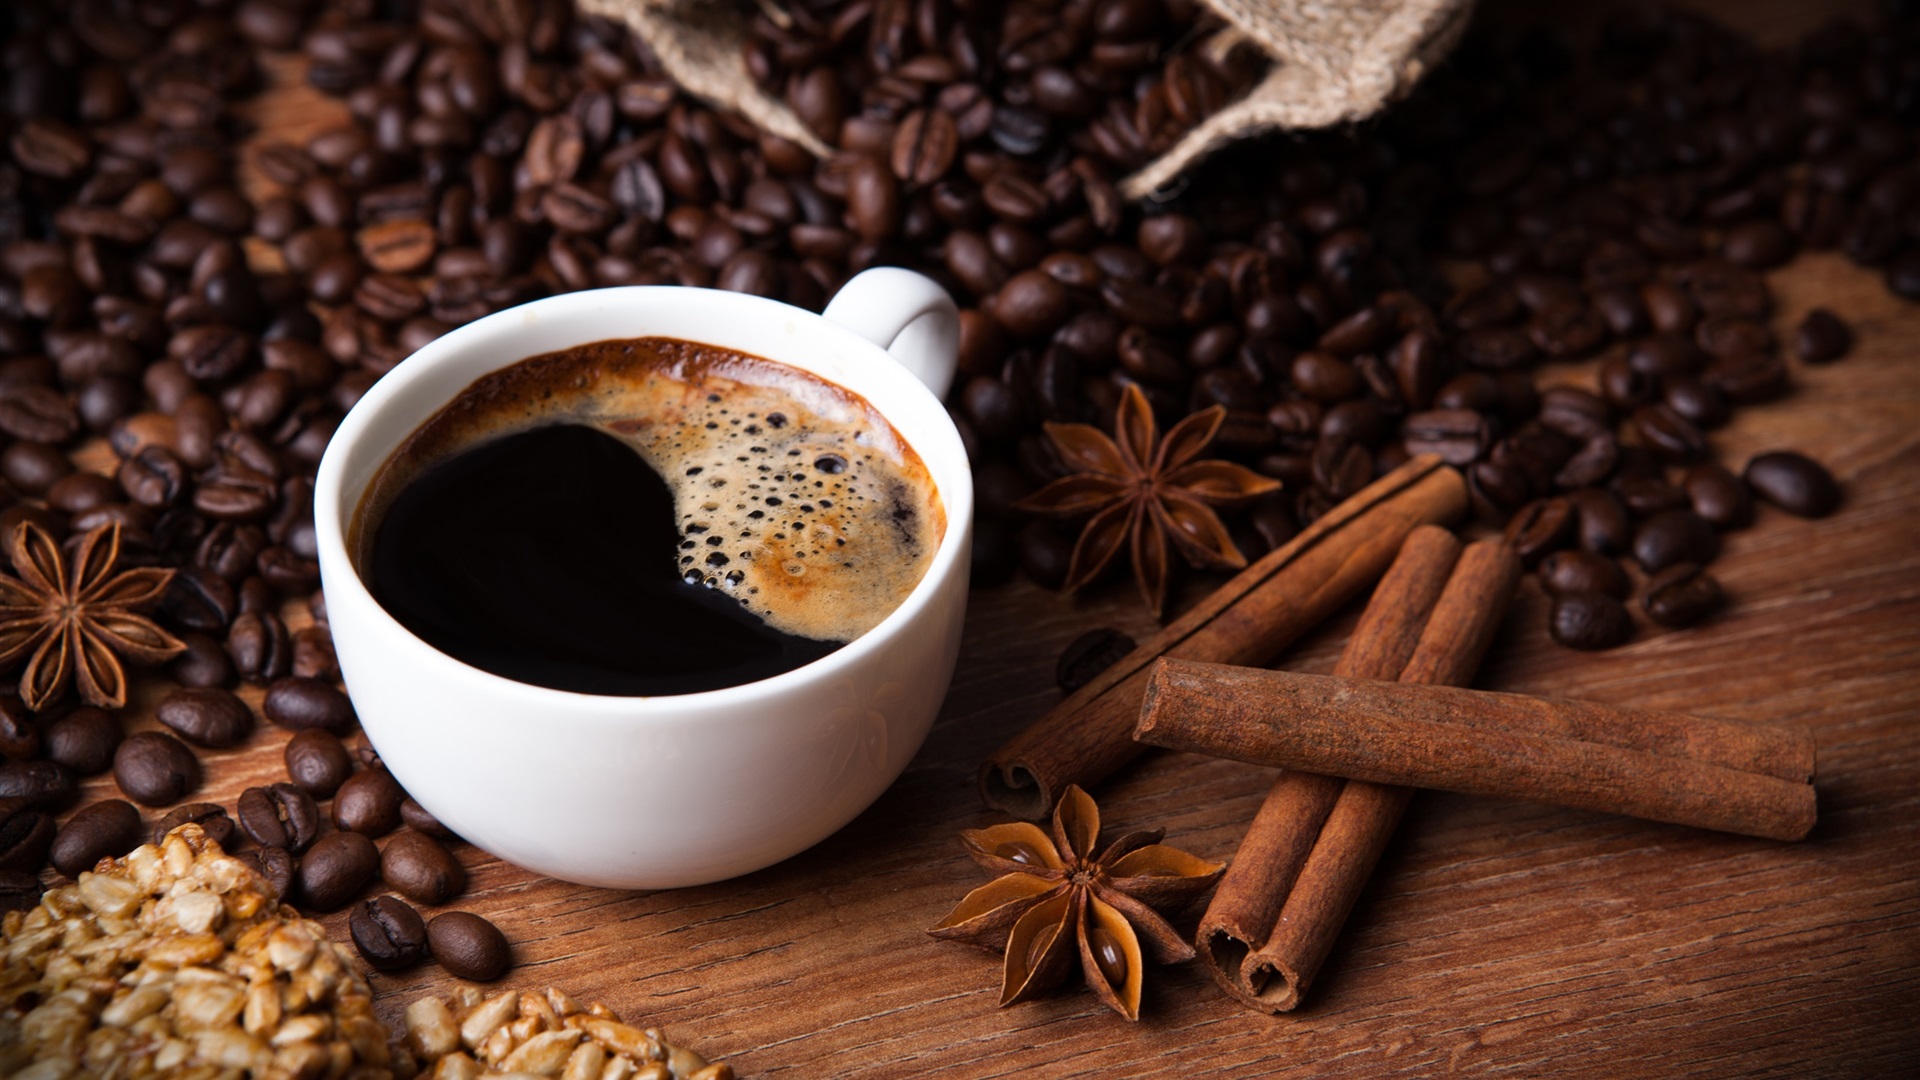 コーヒーカップの壁紙,カフェイン,カップ,コーヒーカップ,単一起源のコーヒー,ジャワコーヒー